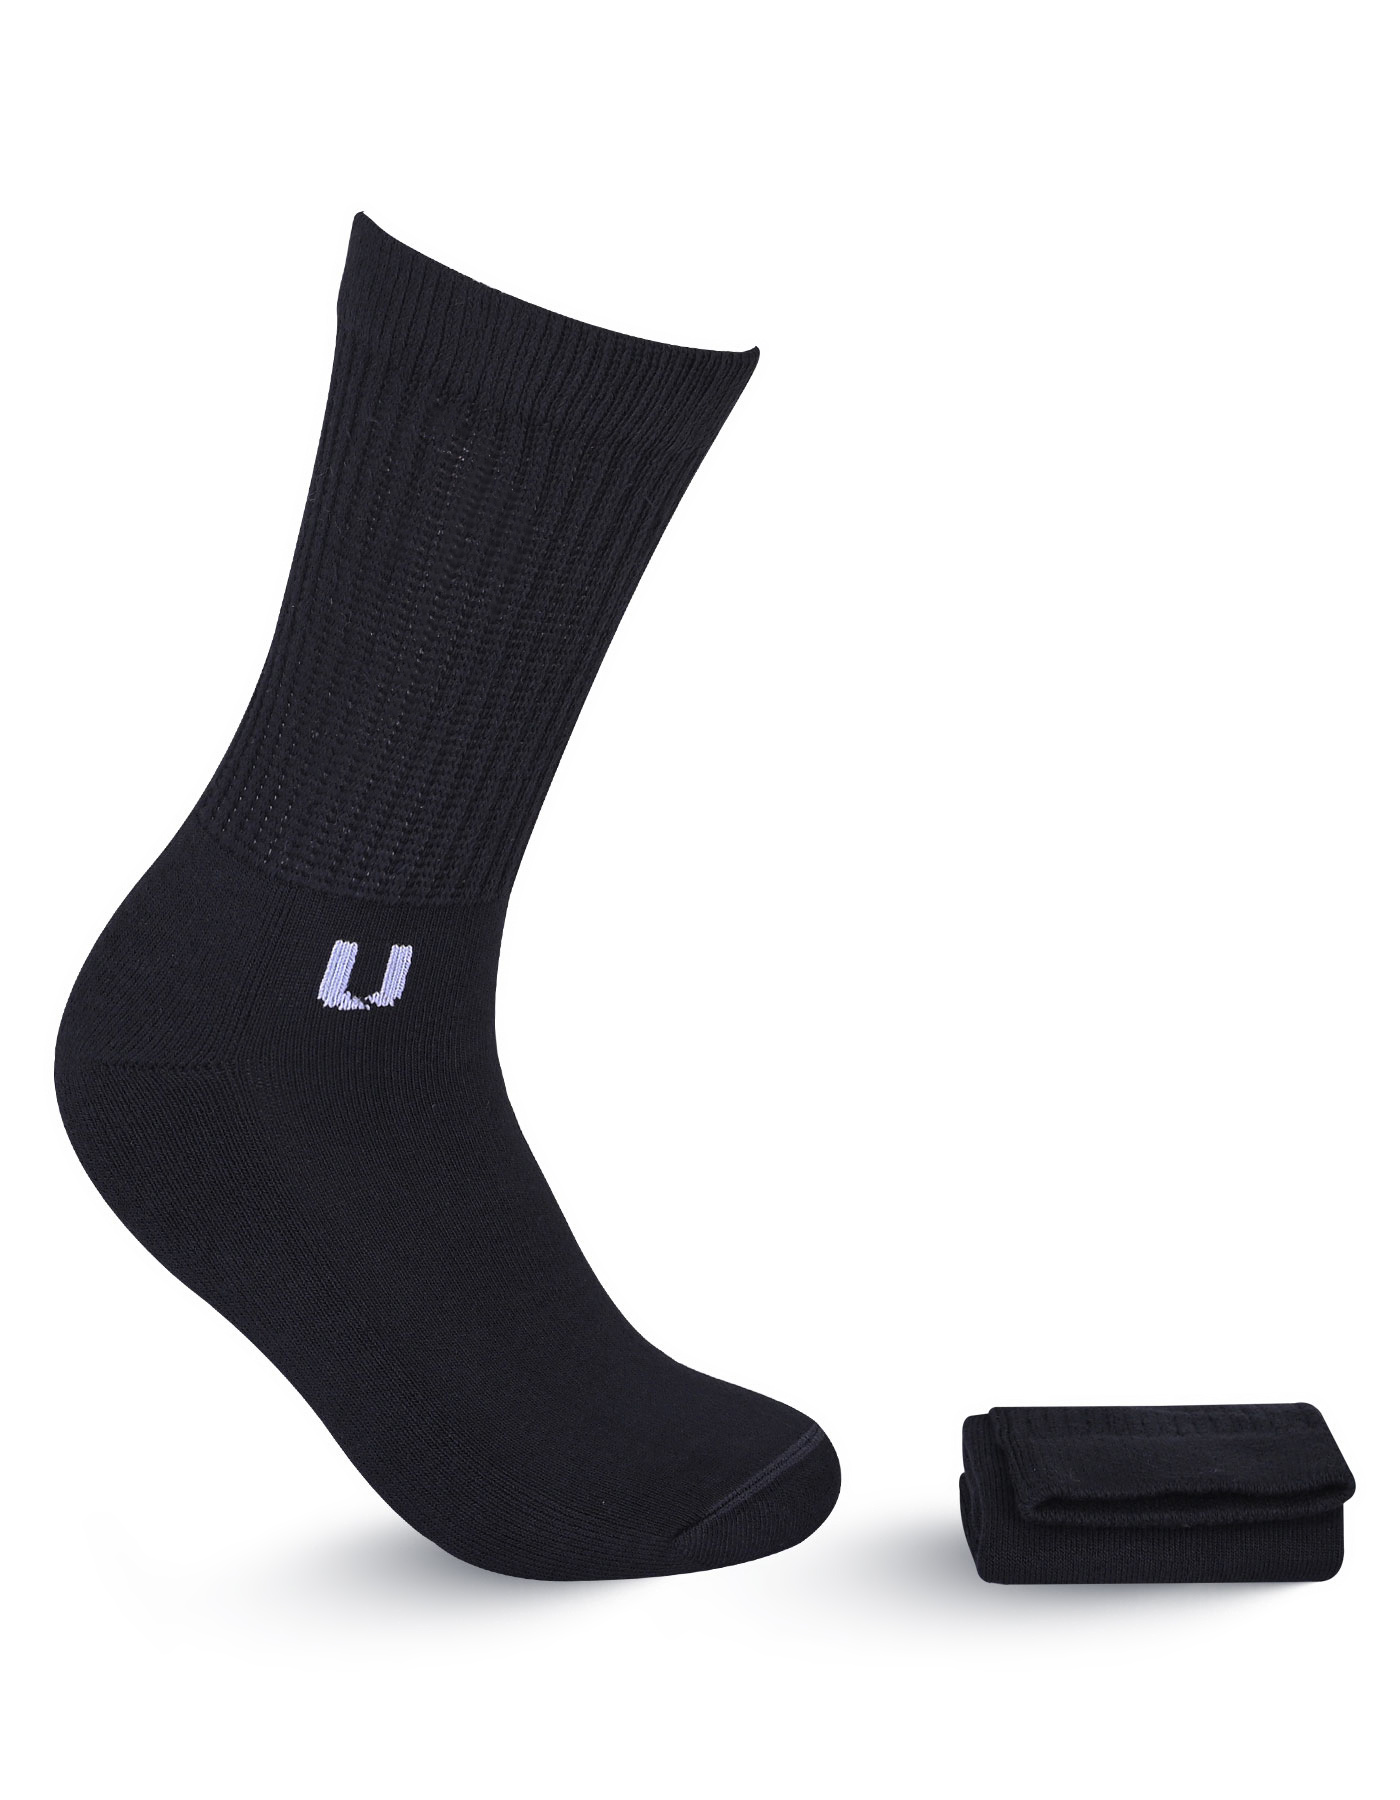 Black Diabetic Socks For Men